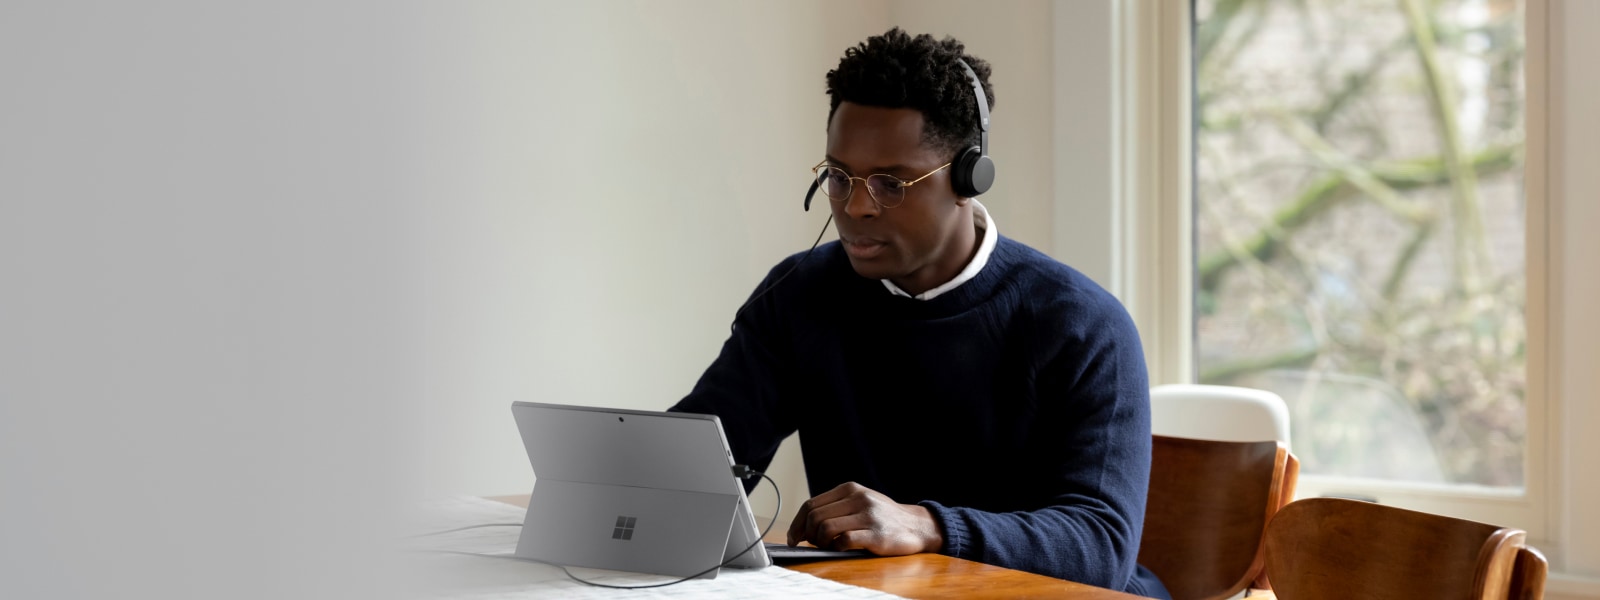 Volwassene die binnen zit met een Surface Pro en een Microsoft Modern USB-headset